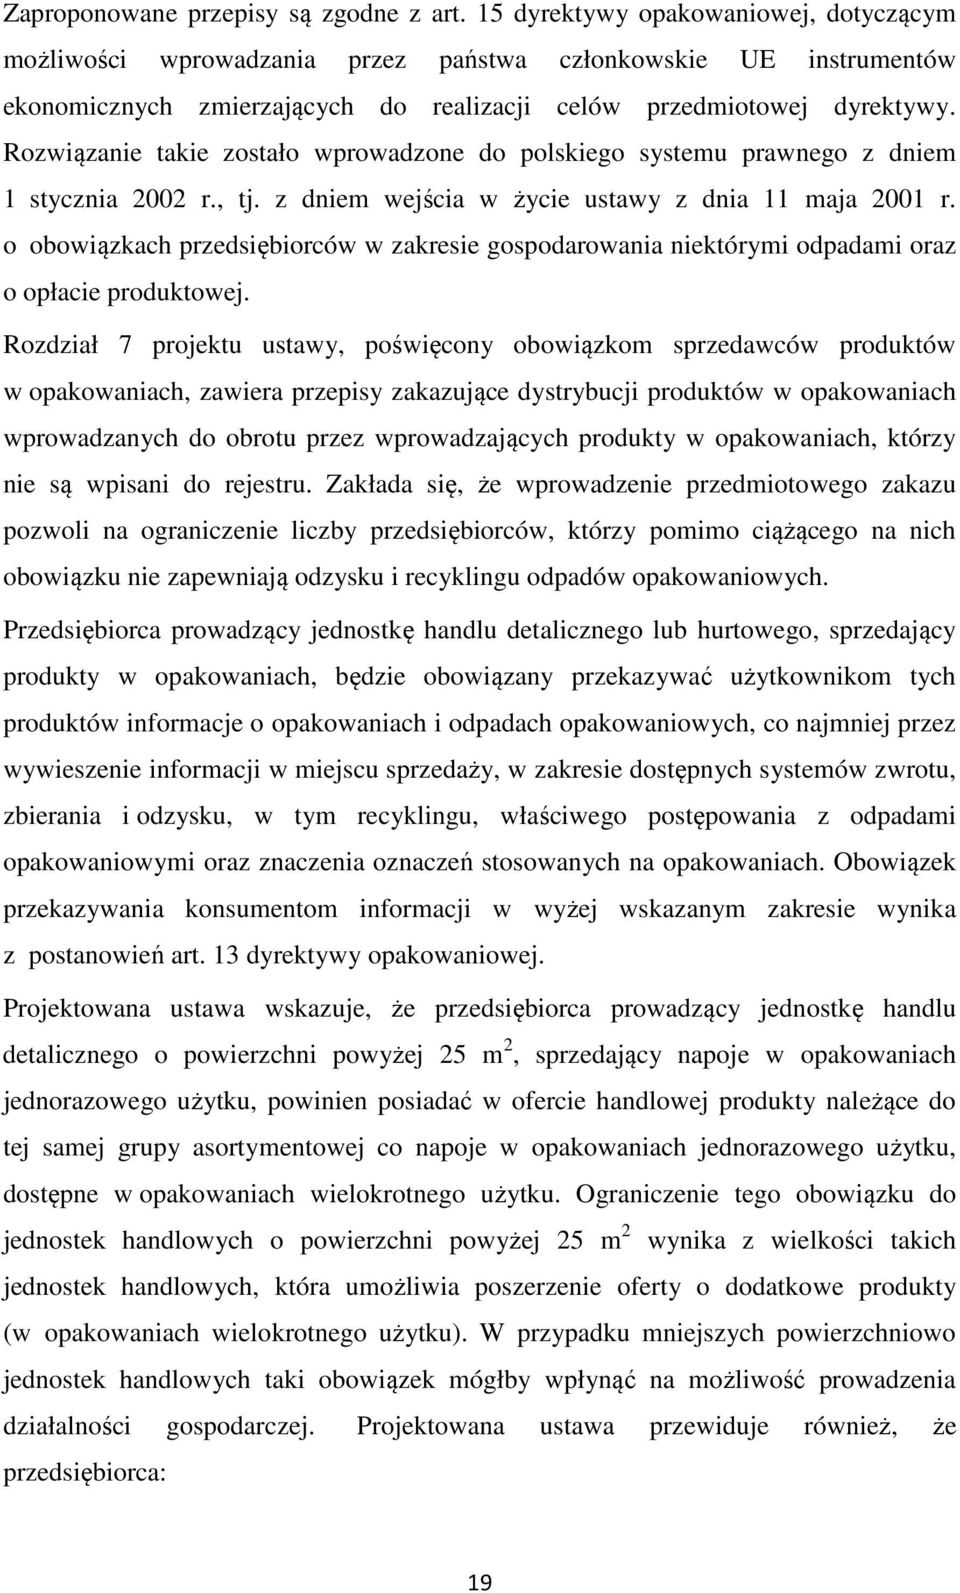 Rozwiązanie takie zostało wprowadzone do polskiego systemu prawnego z dniem 1 stycznia 2002 r., tj. z dniem wejścia w życie ustawy z dnia 11 maja 2001 r.